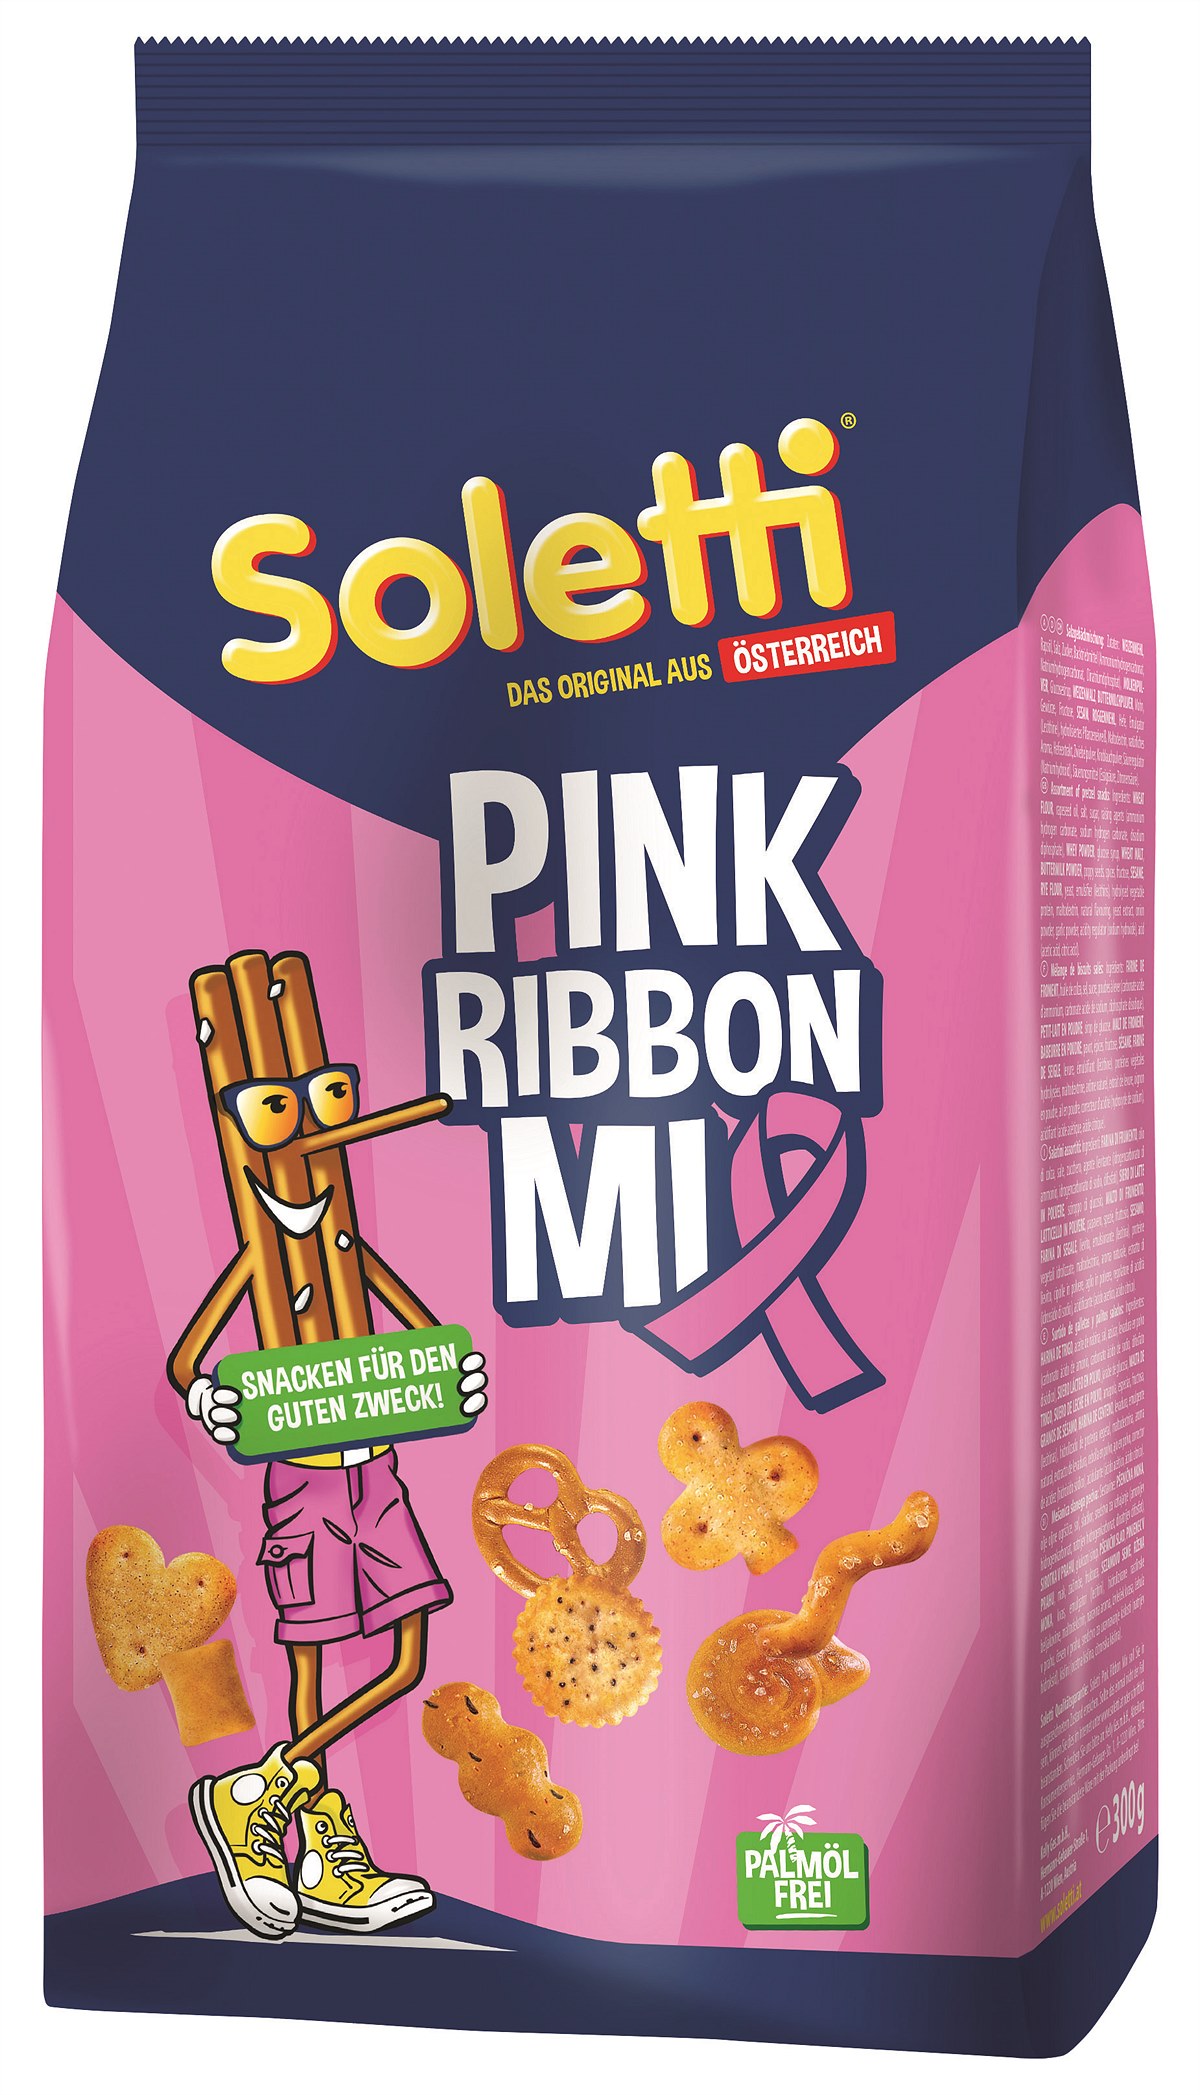 Soletti Pink Ribbon Mix